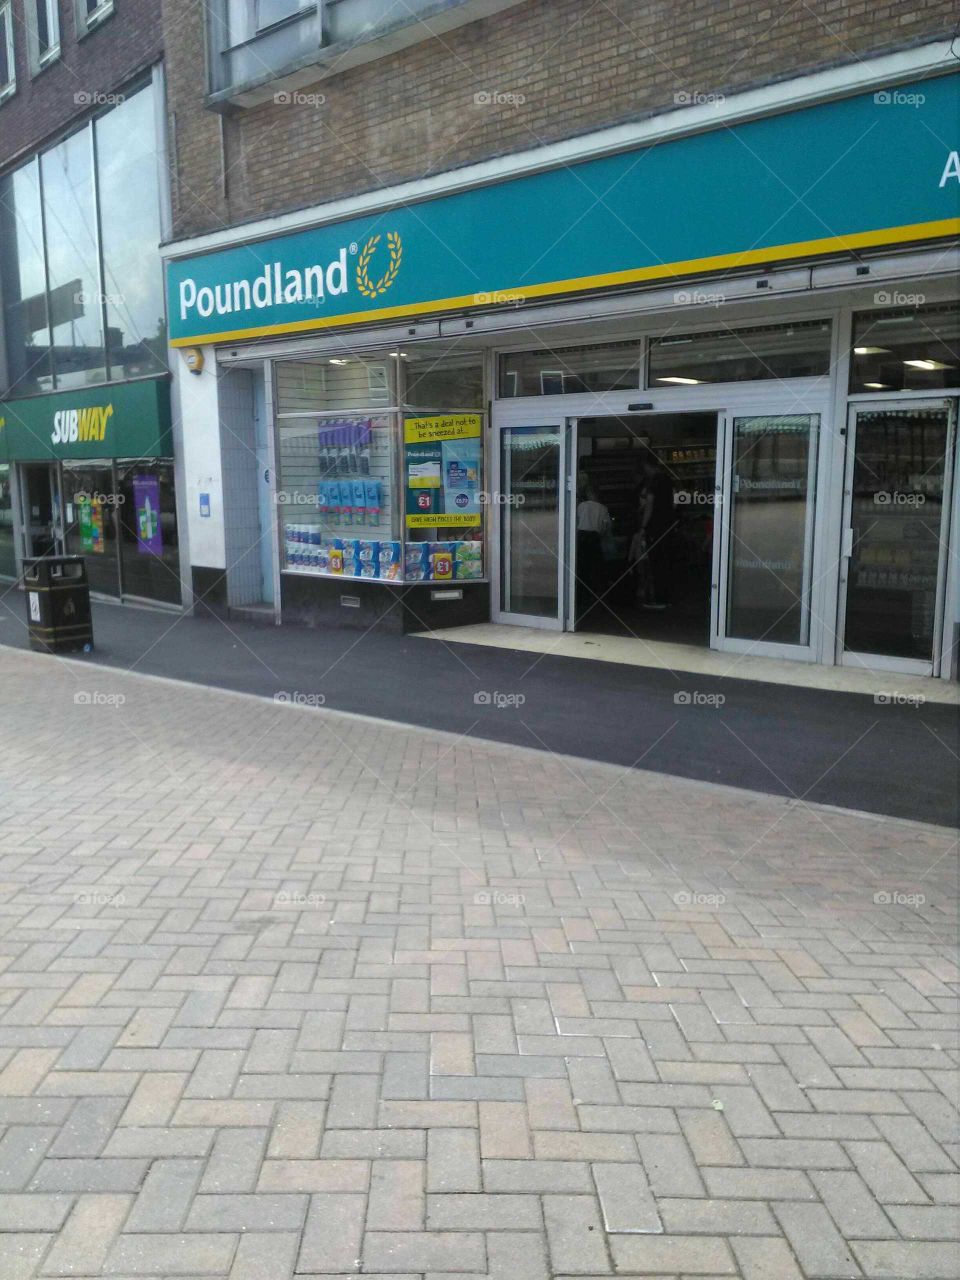 Poundland shopping